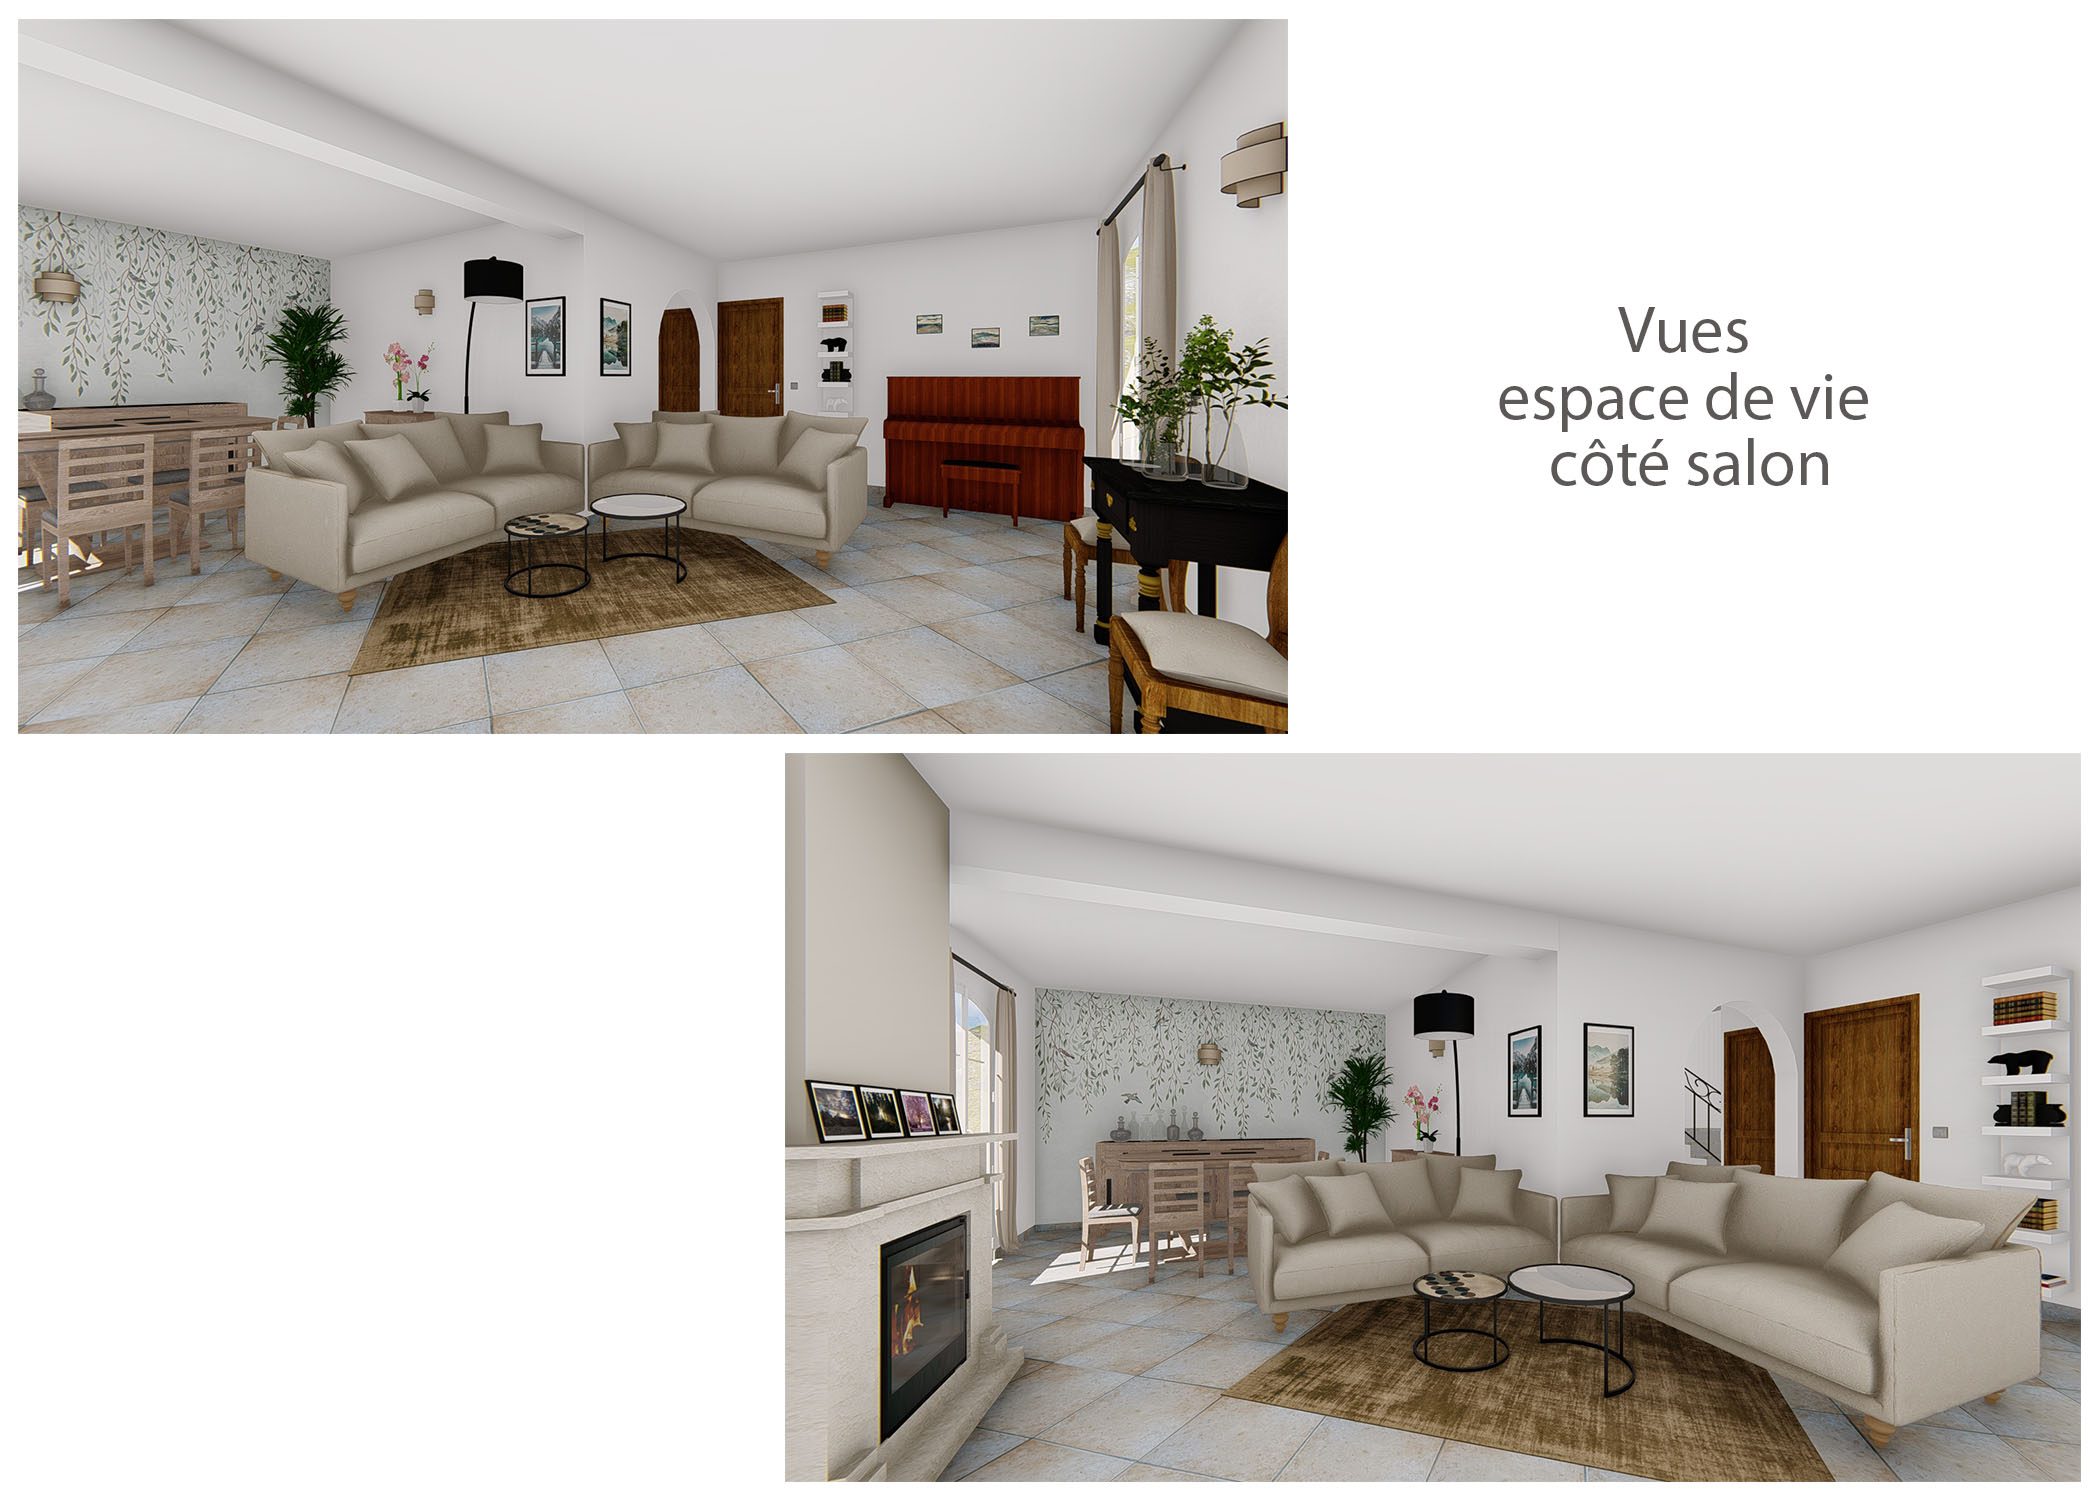 agencement-decoration-espace de vie et sanitaires peynier-vues espace de vie cote salon 2-dekho design